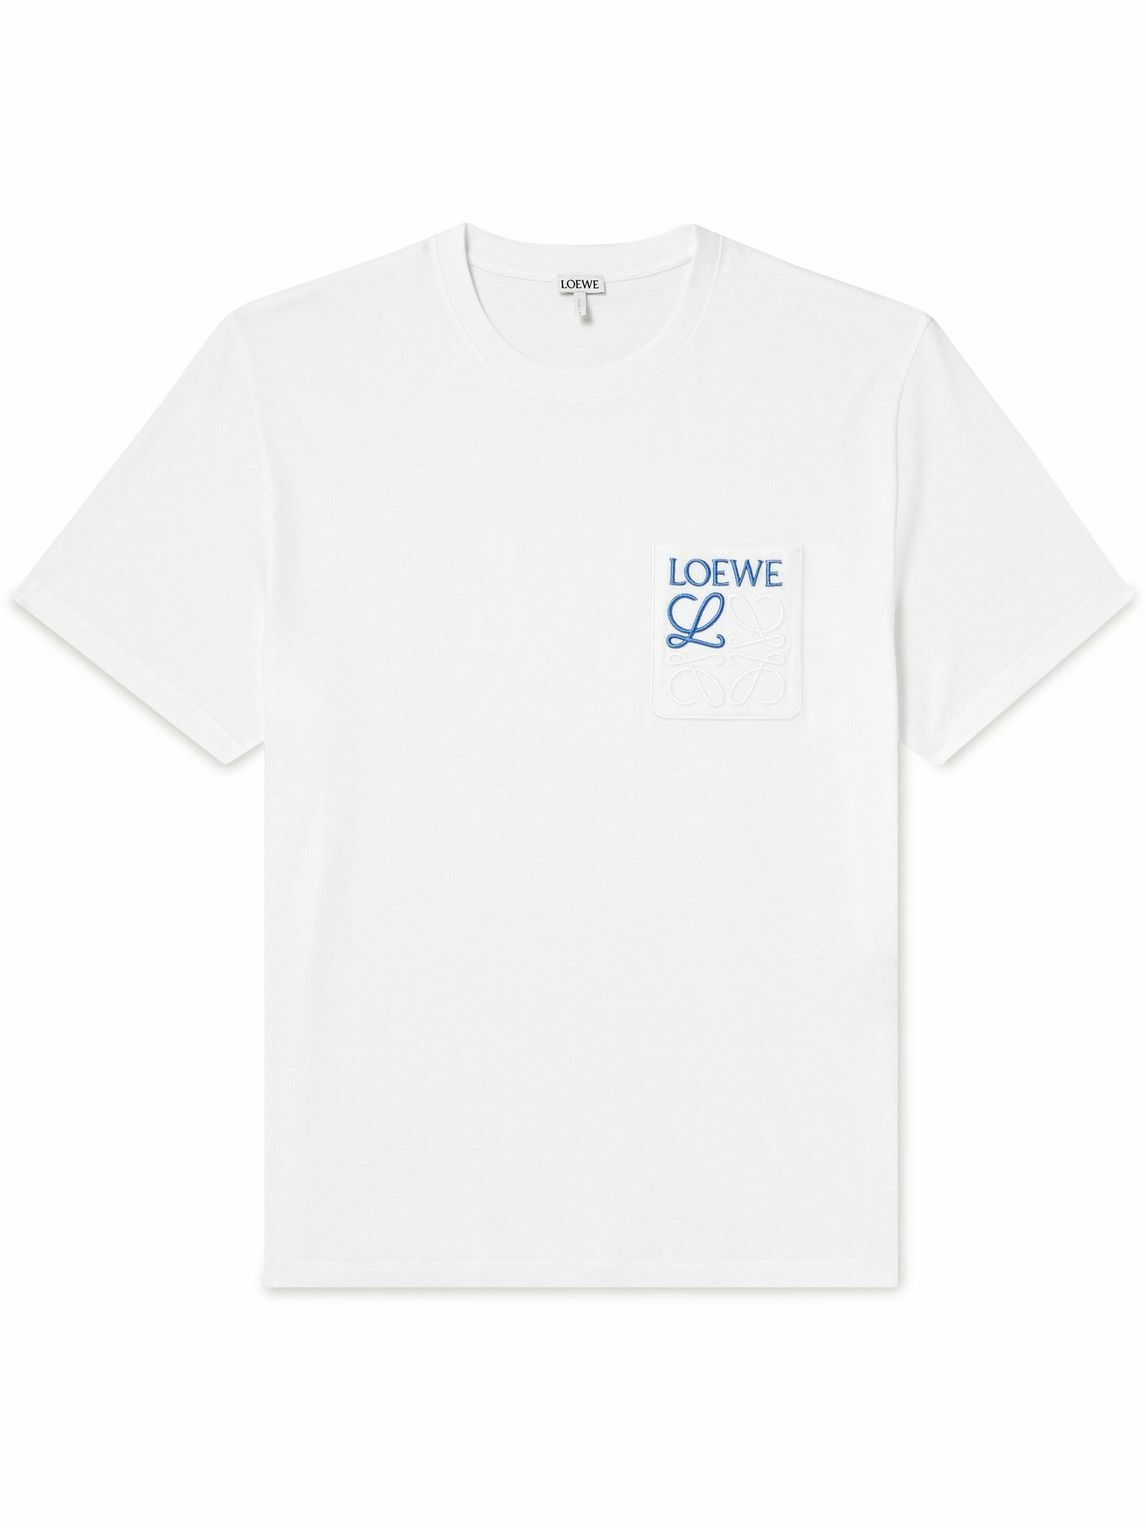 Loewe, Shirts, Loewe Logo Long Sleeve Shirt Size Medium